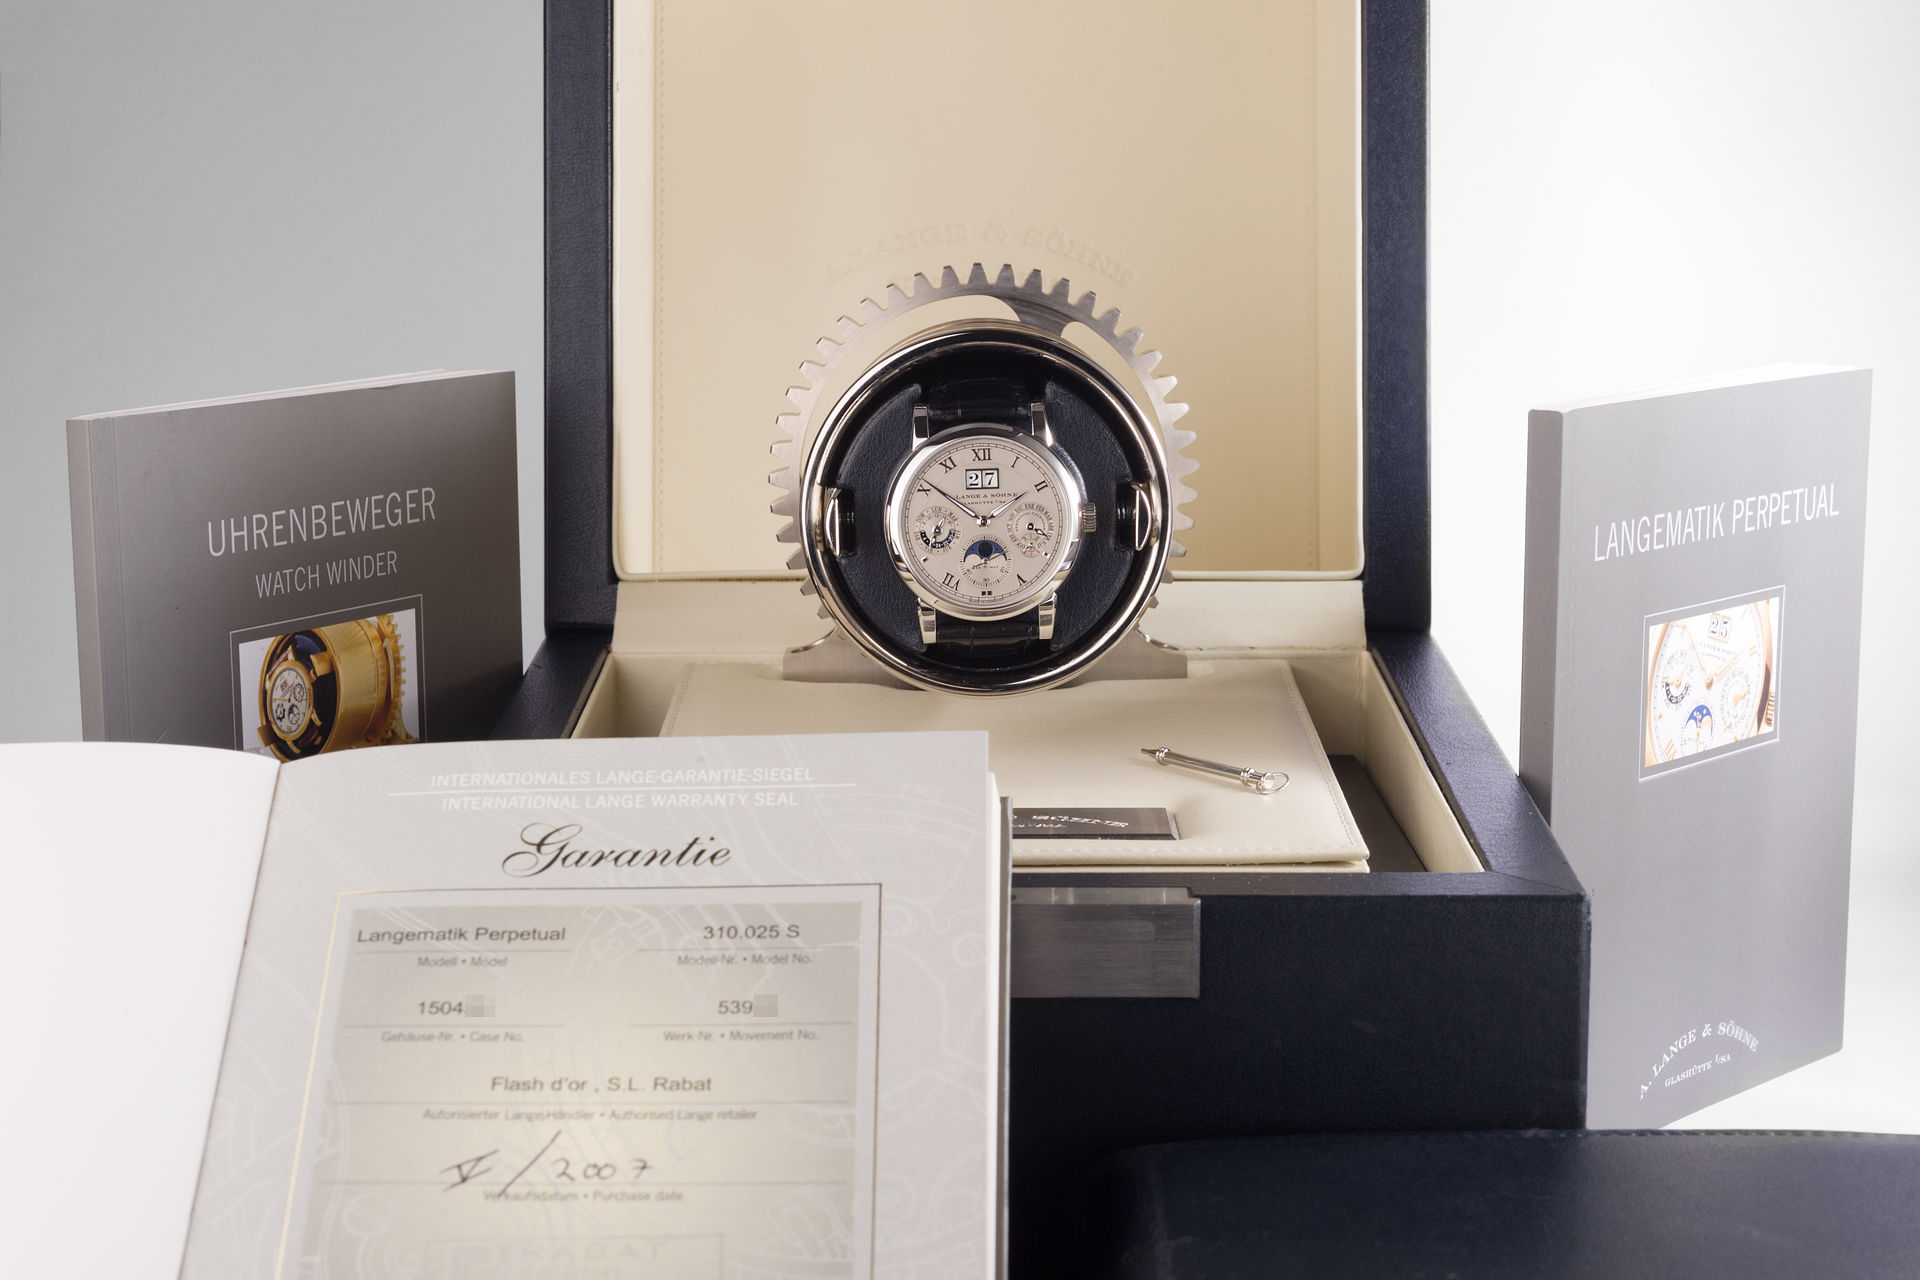 ref 310.025 S | Platinum 'Complete Set' | A. Lange & Söhne Langematik Perpetual